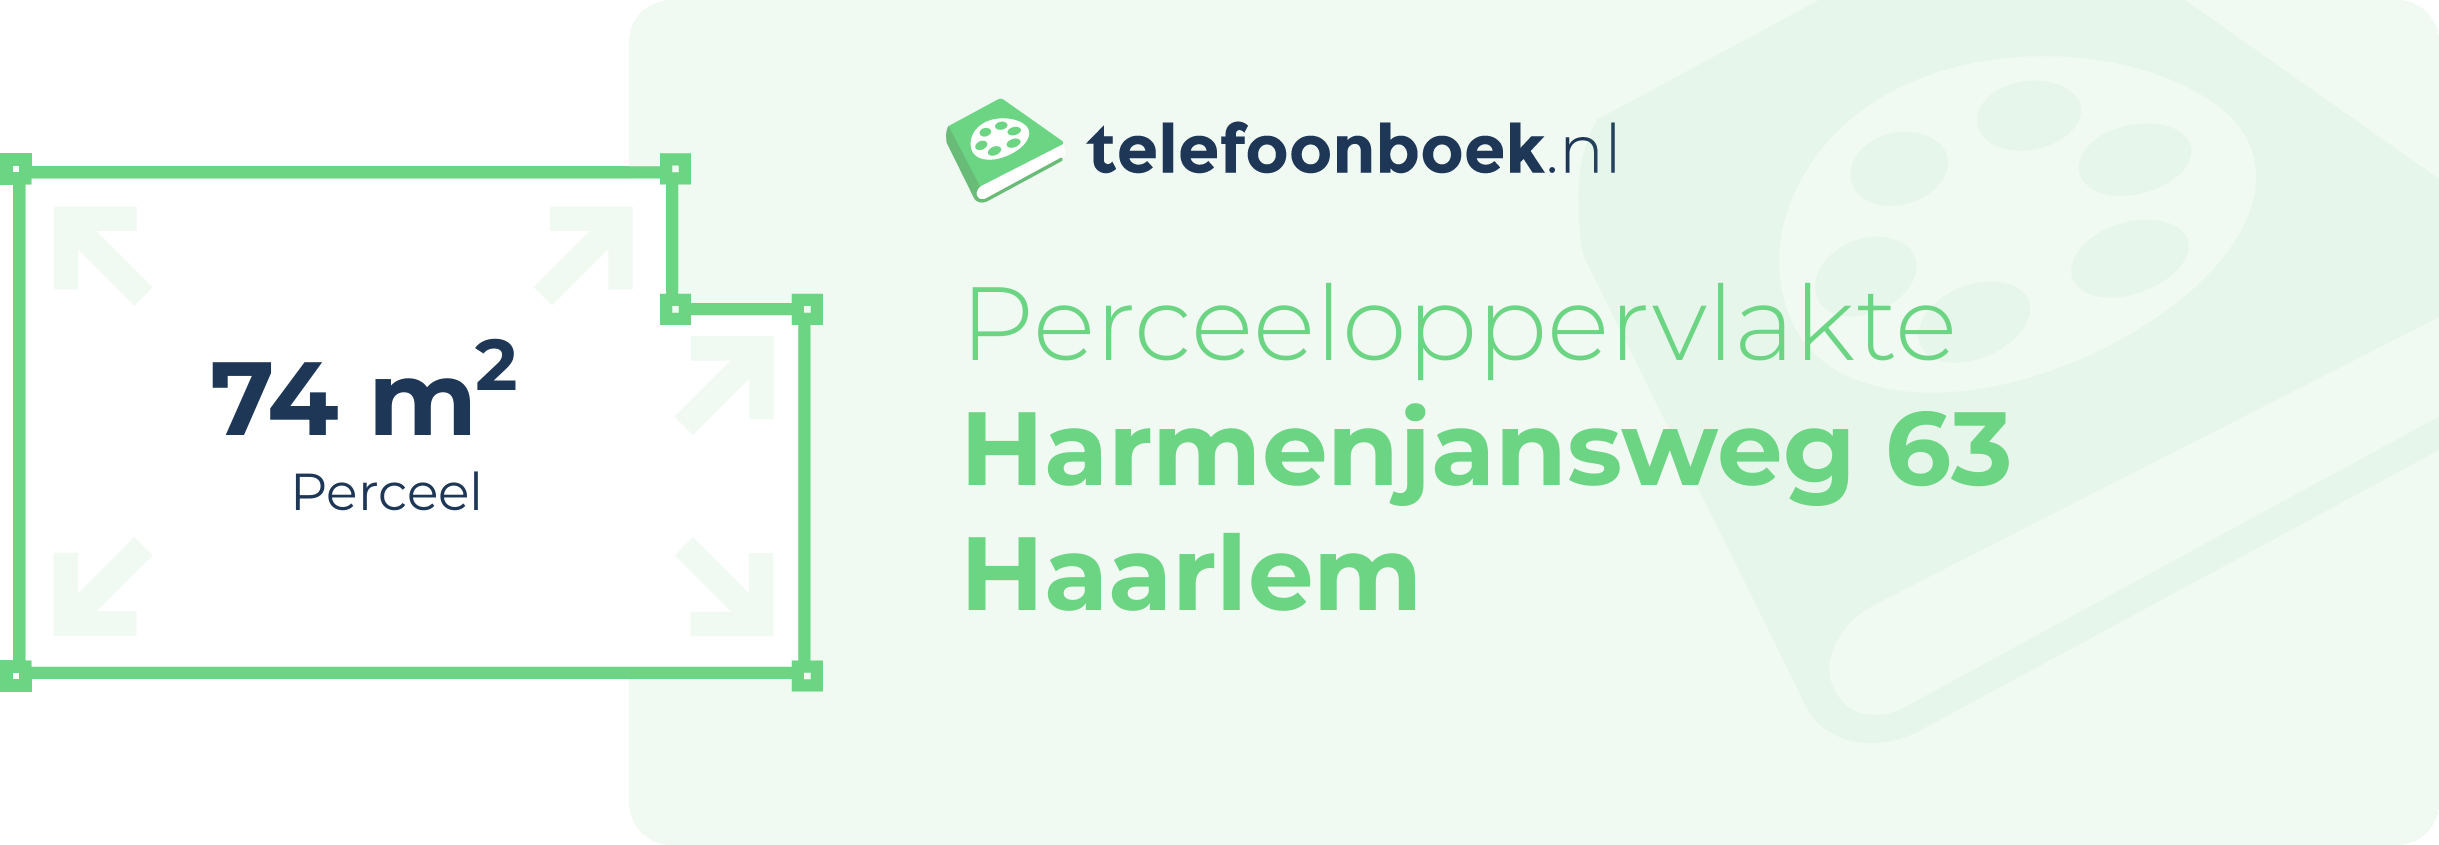 Perceeloppervlakte Harmenjansweg 63 Haarlem